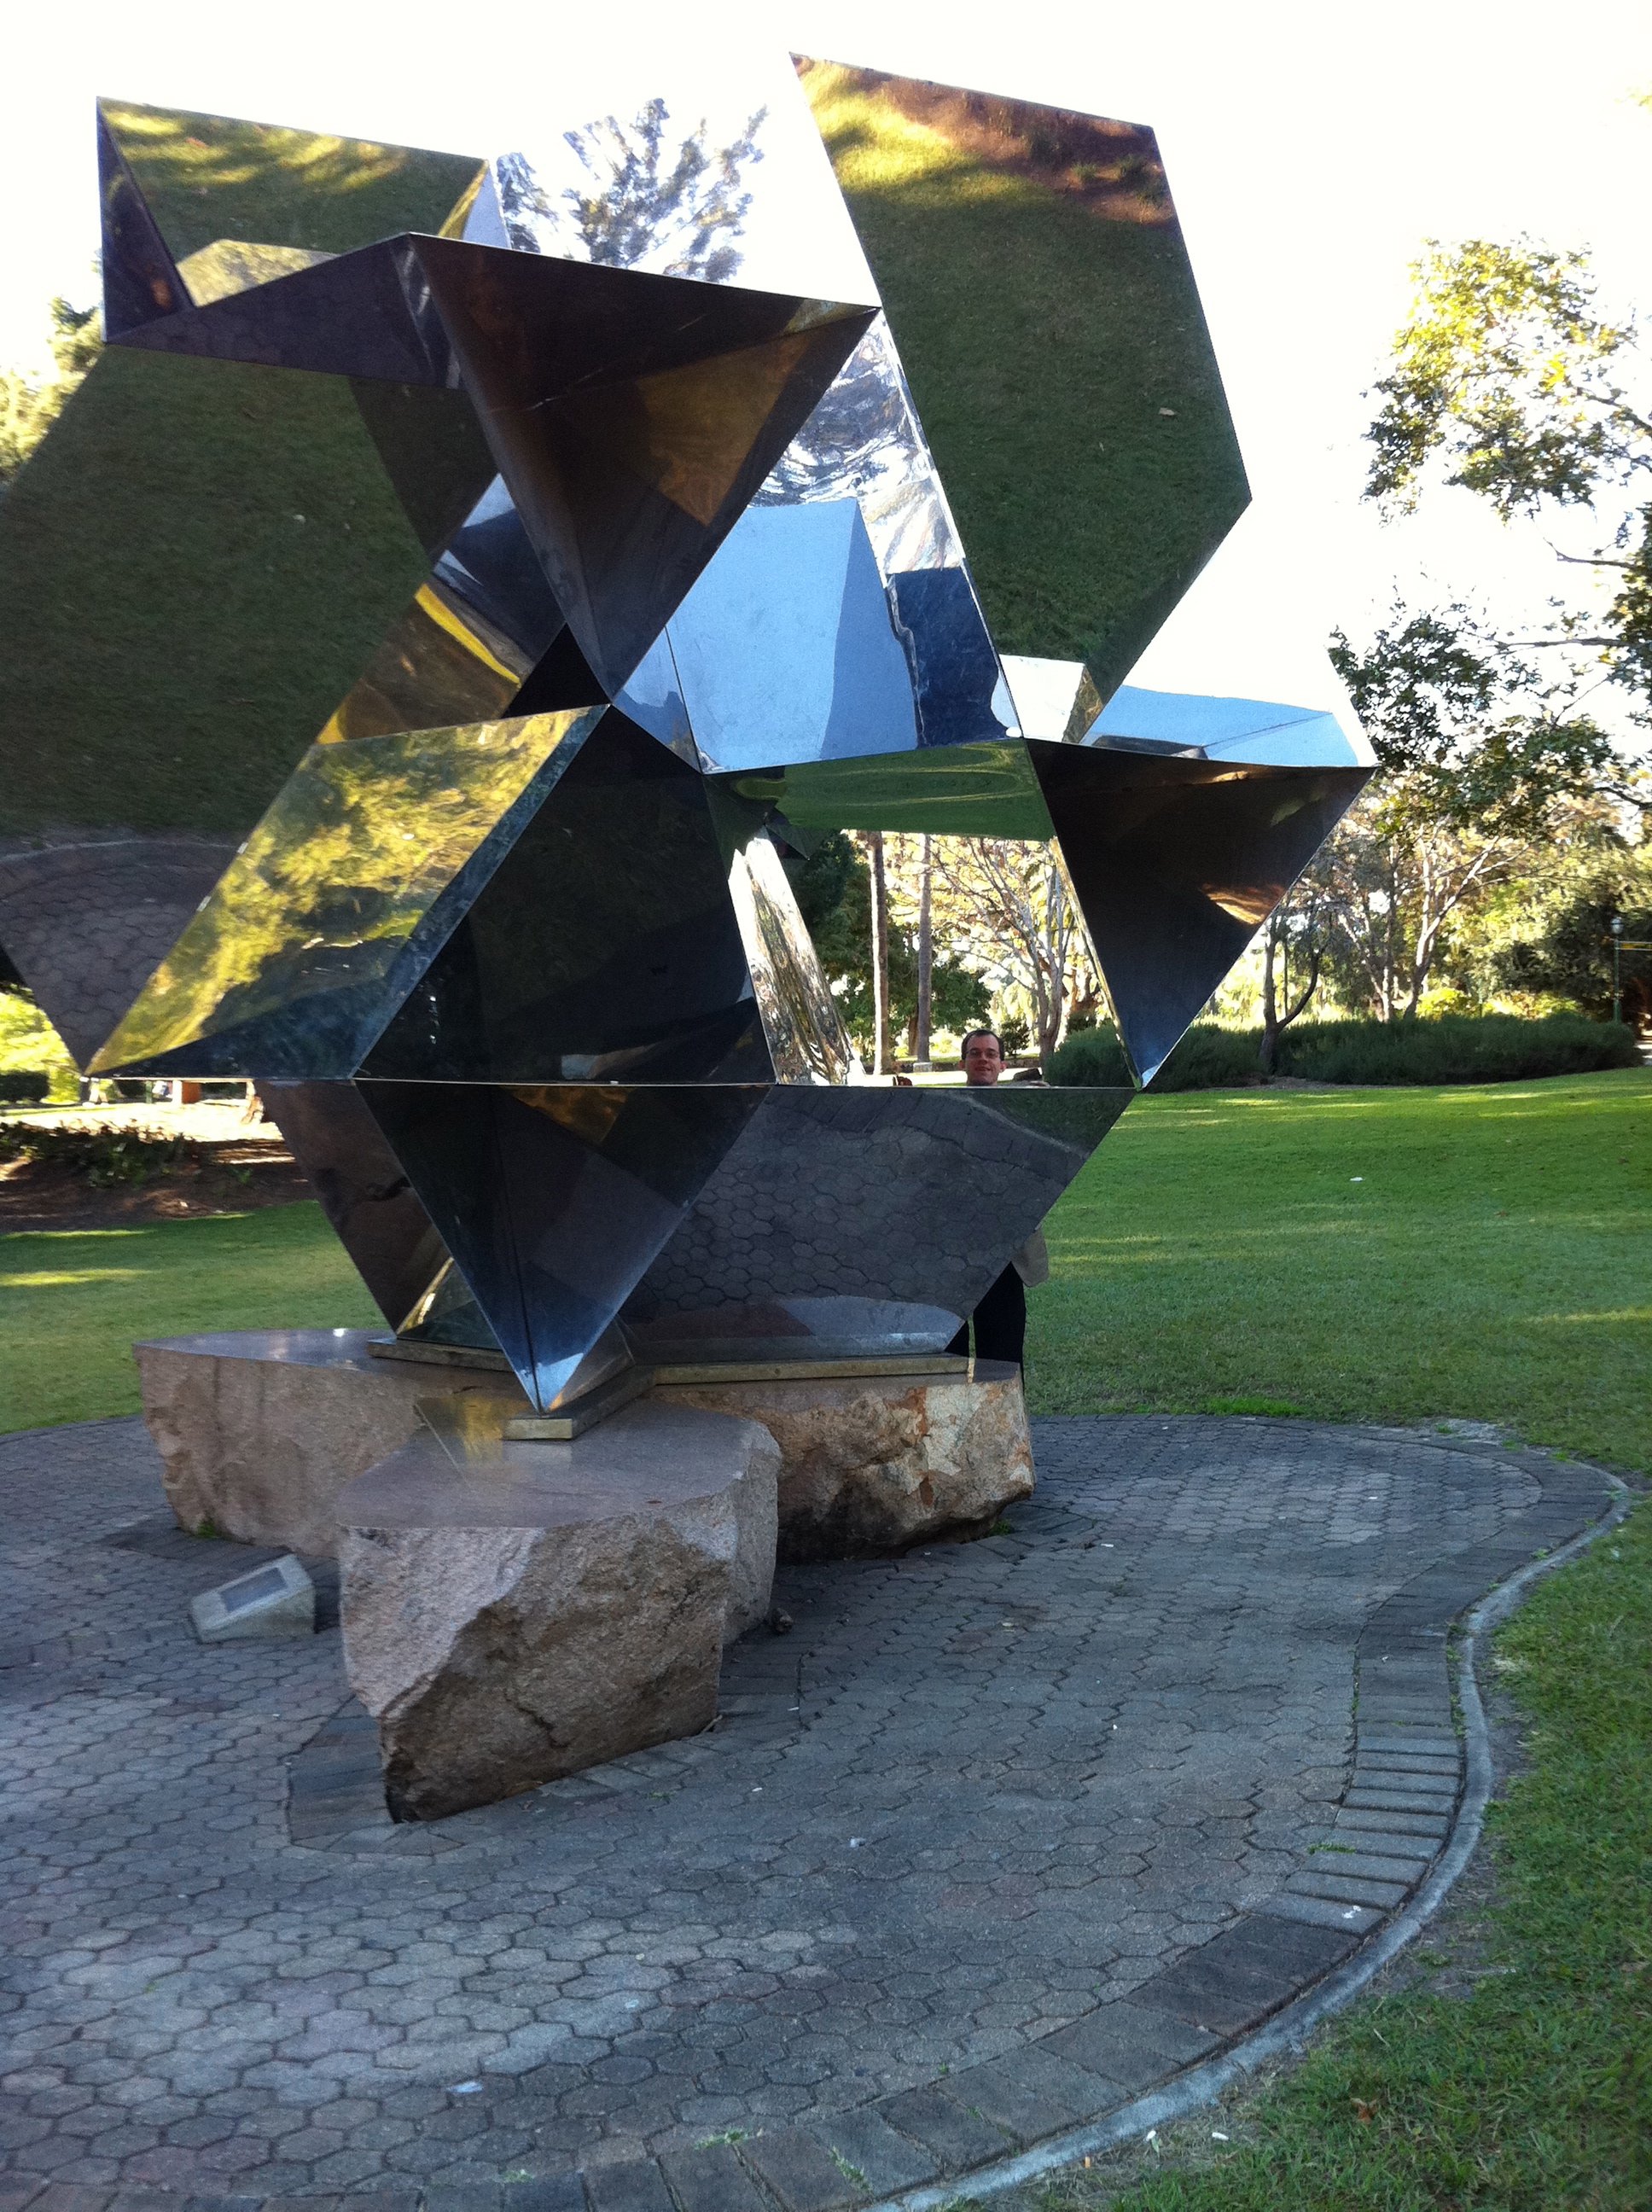 Brisbane sculpture: spaceship in at city botanic gardens